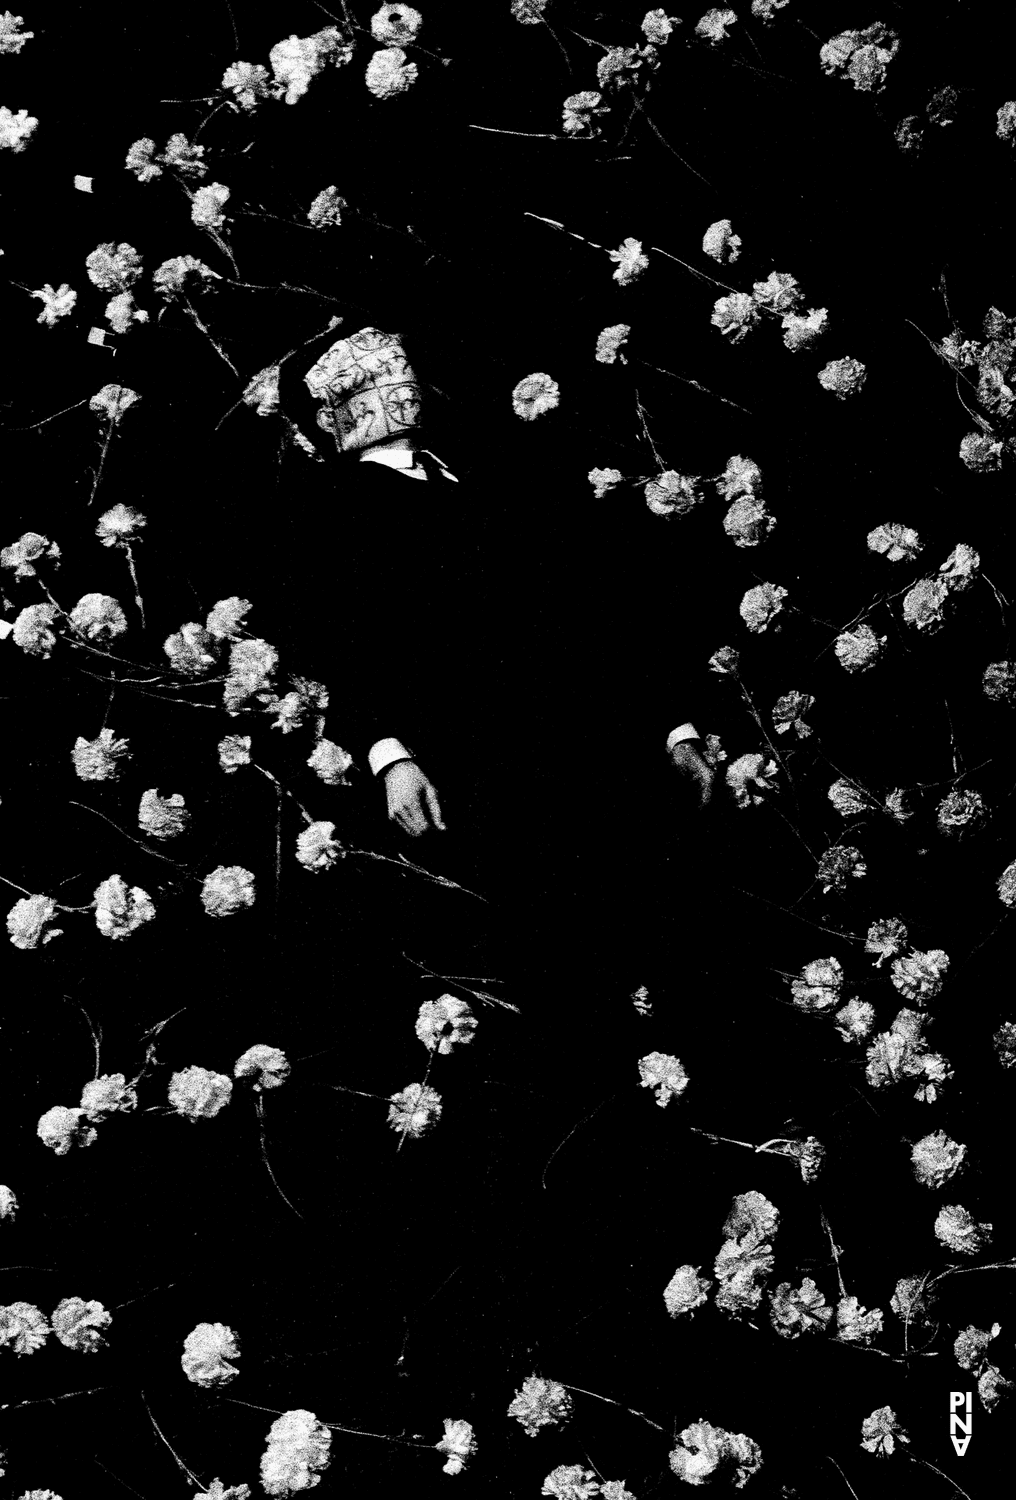 “Nelken (Carnations)” by Pina Bausch